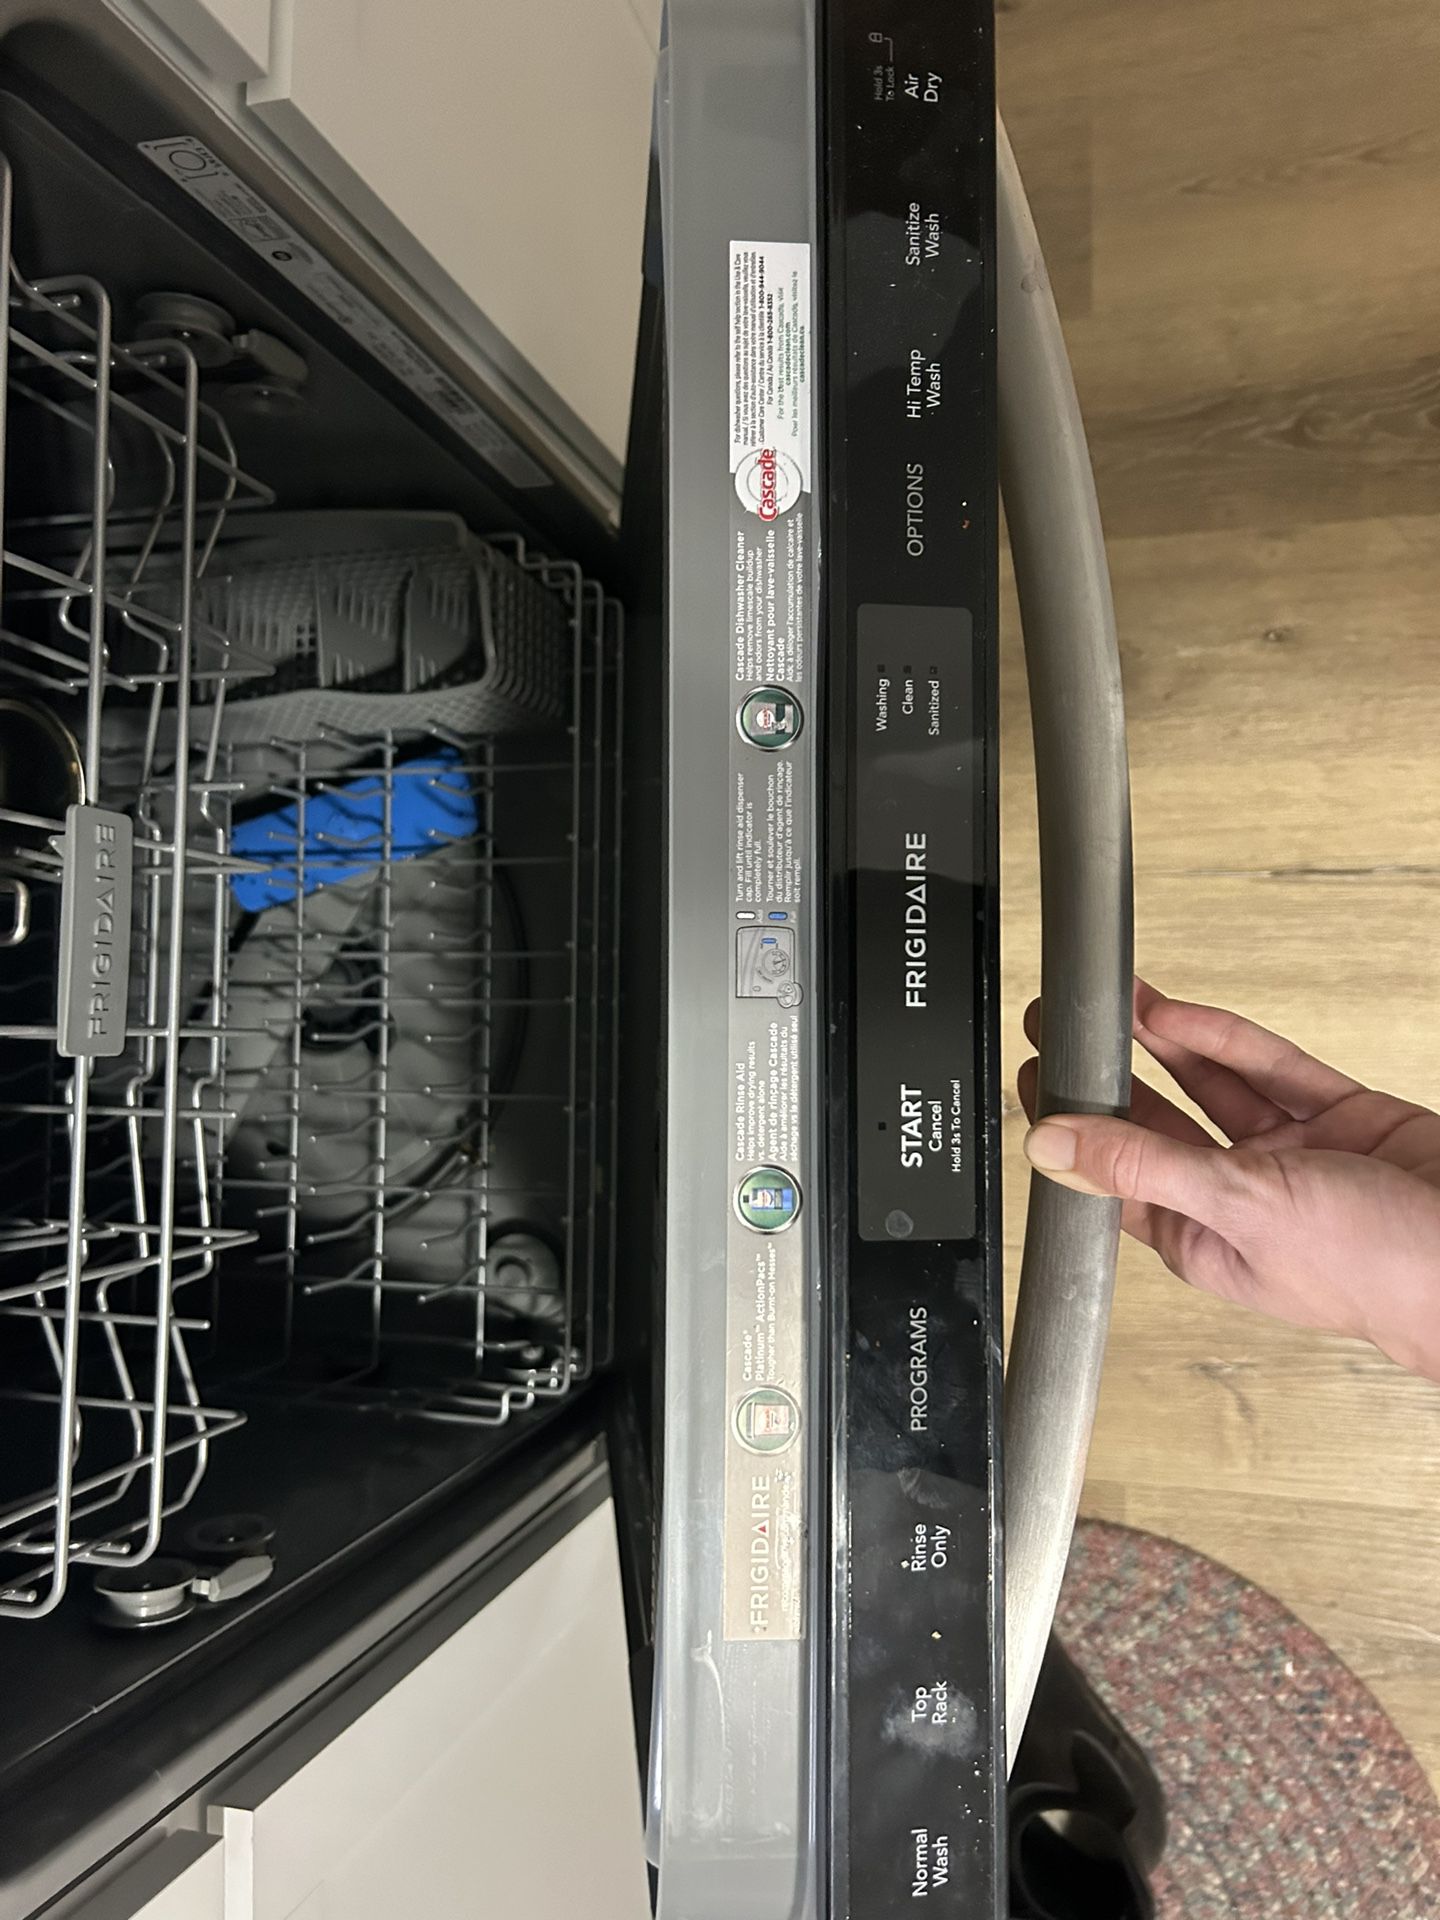 Frigidaire Dishwasher